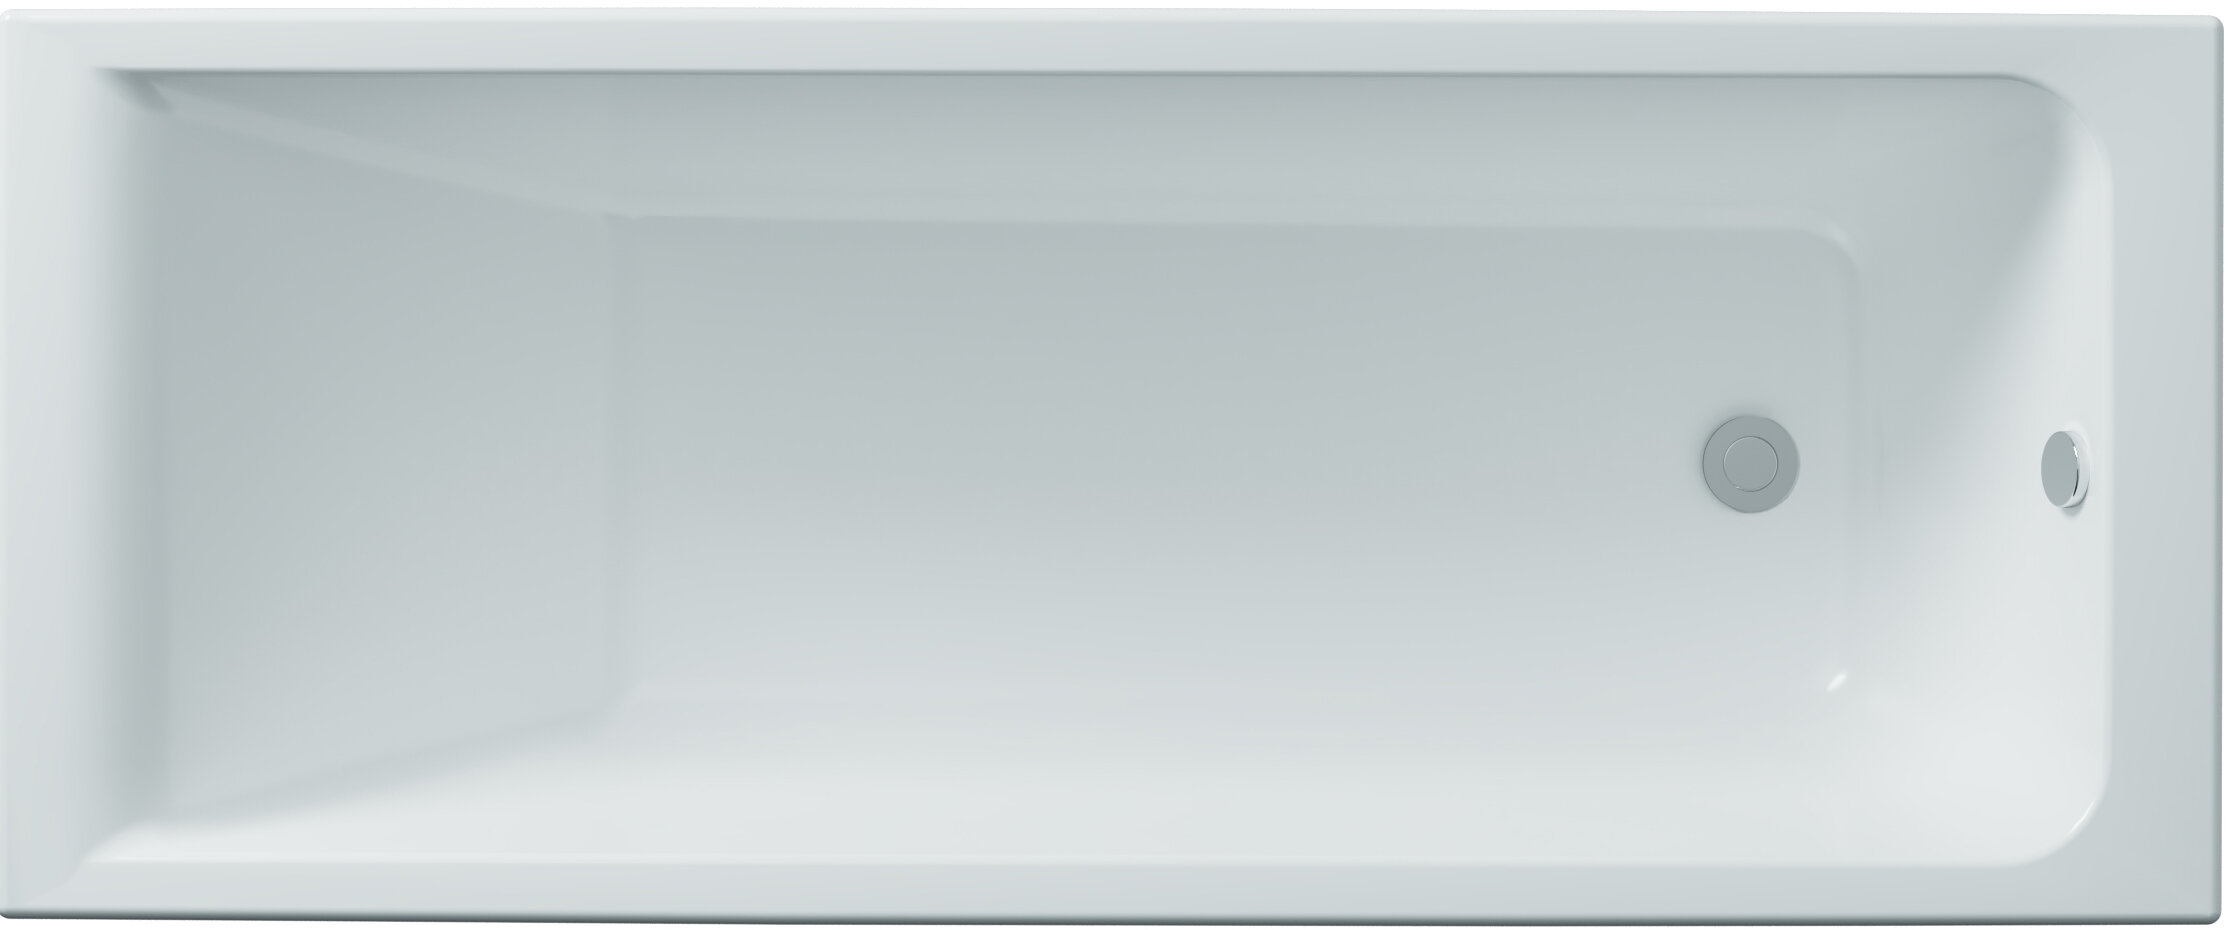 Акриловая ванна DIWO Переславль 150x70 прямоугольная, белая, российская, пристенная, с ножками